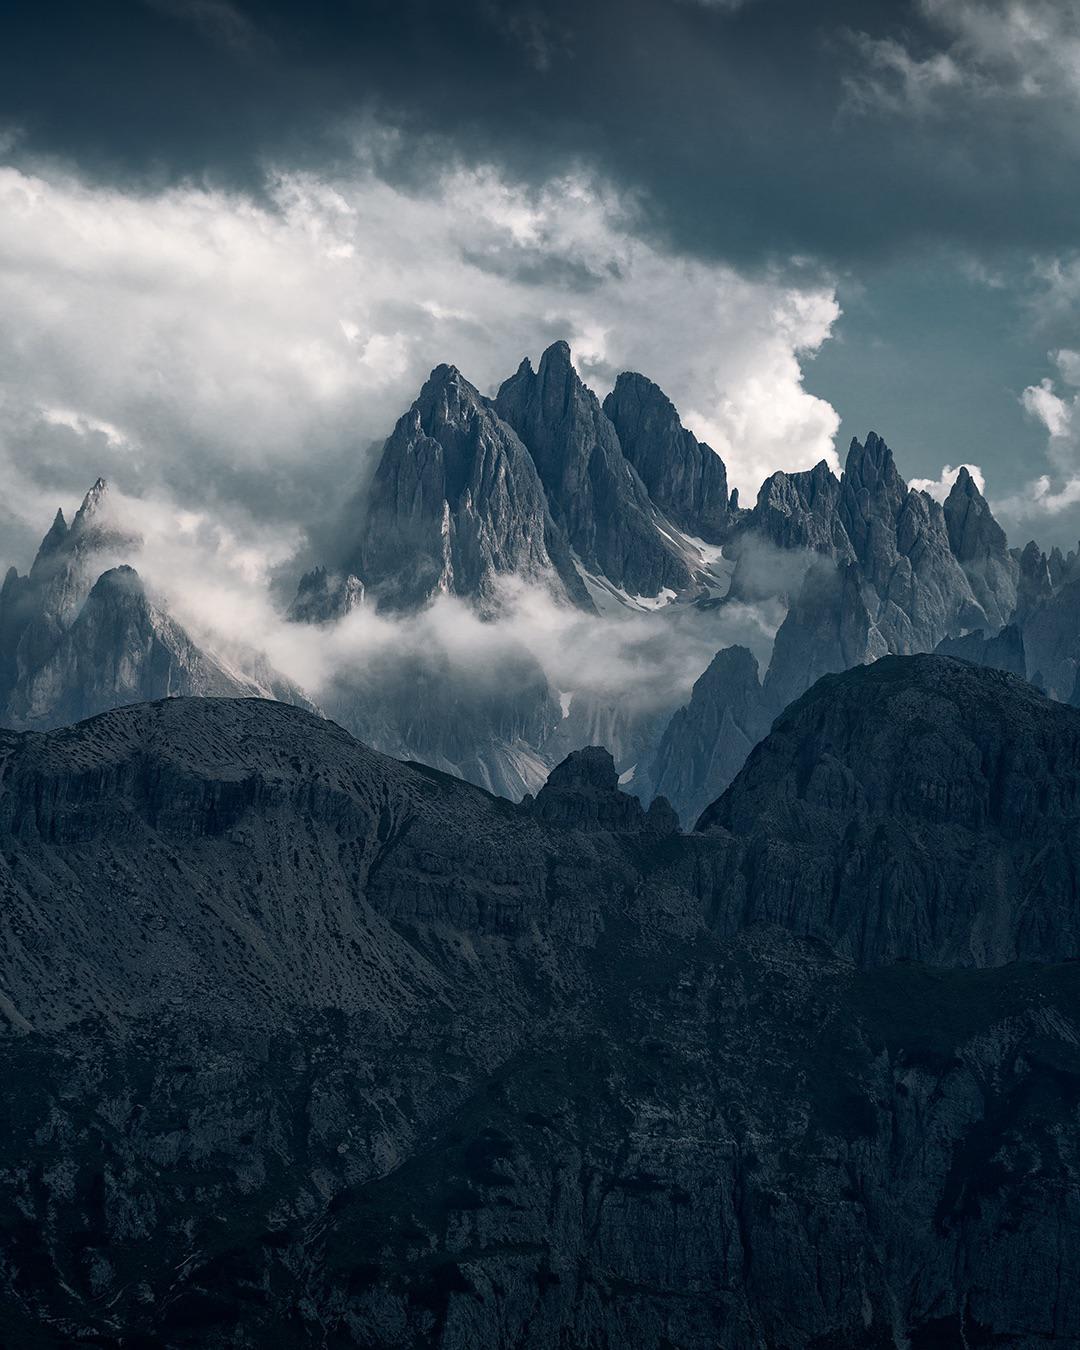 Peaks of the Dolomites @holysh0t